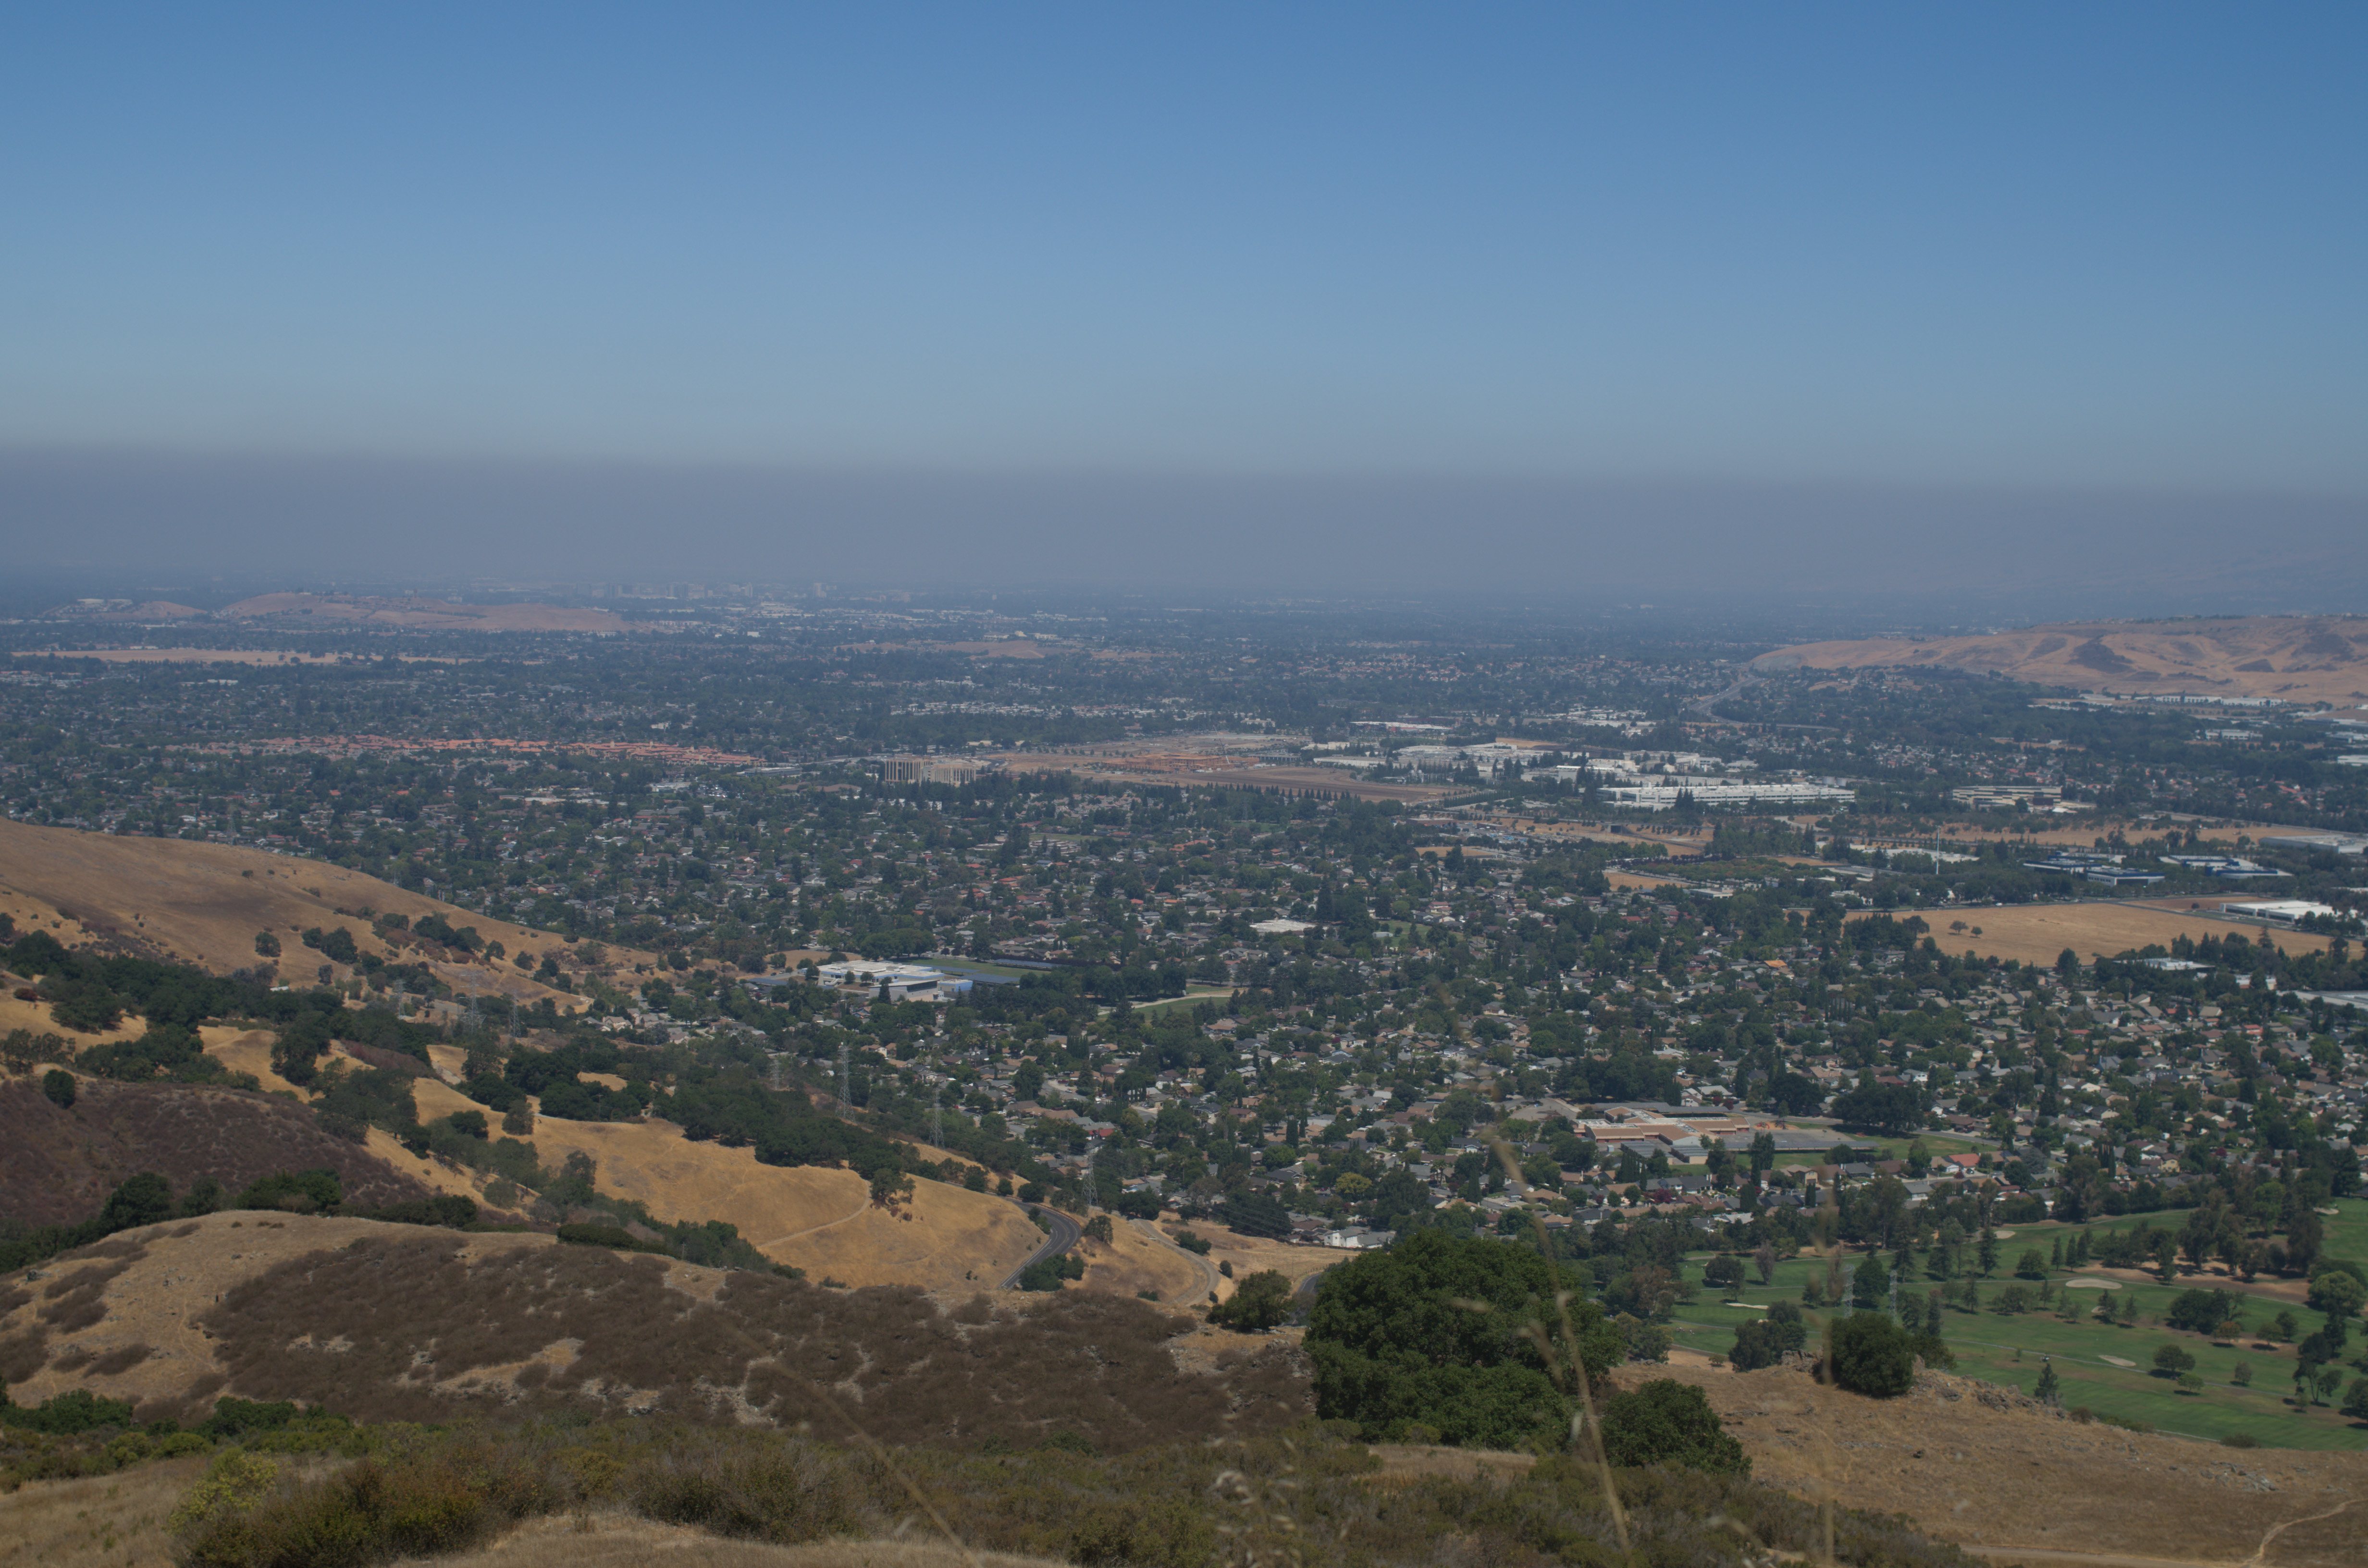 Hazy view of San Jose